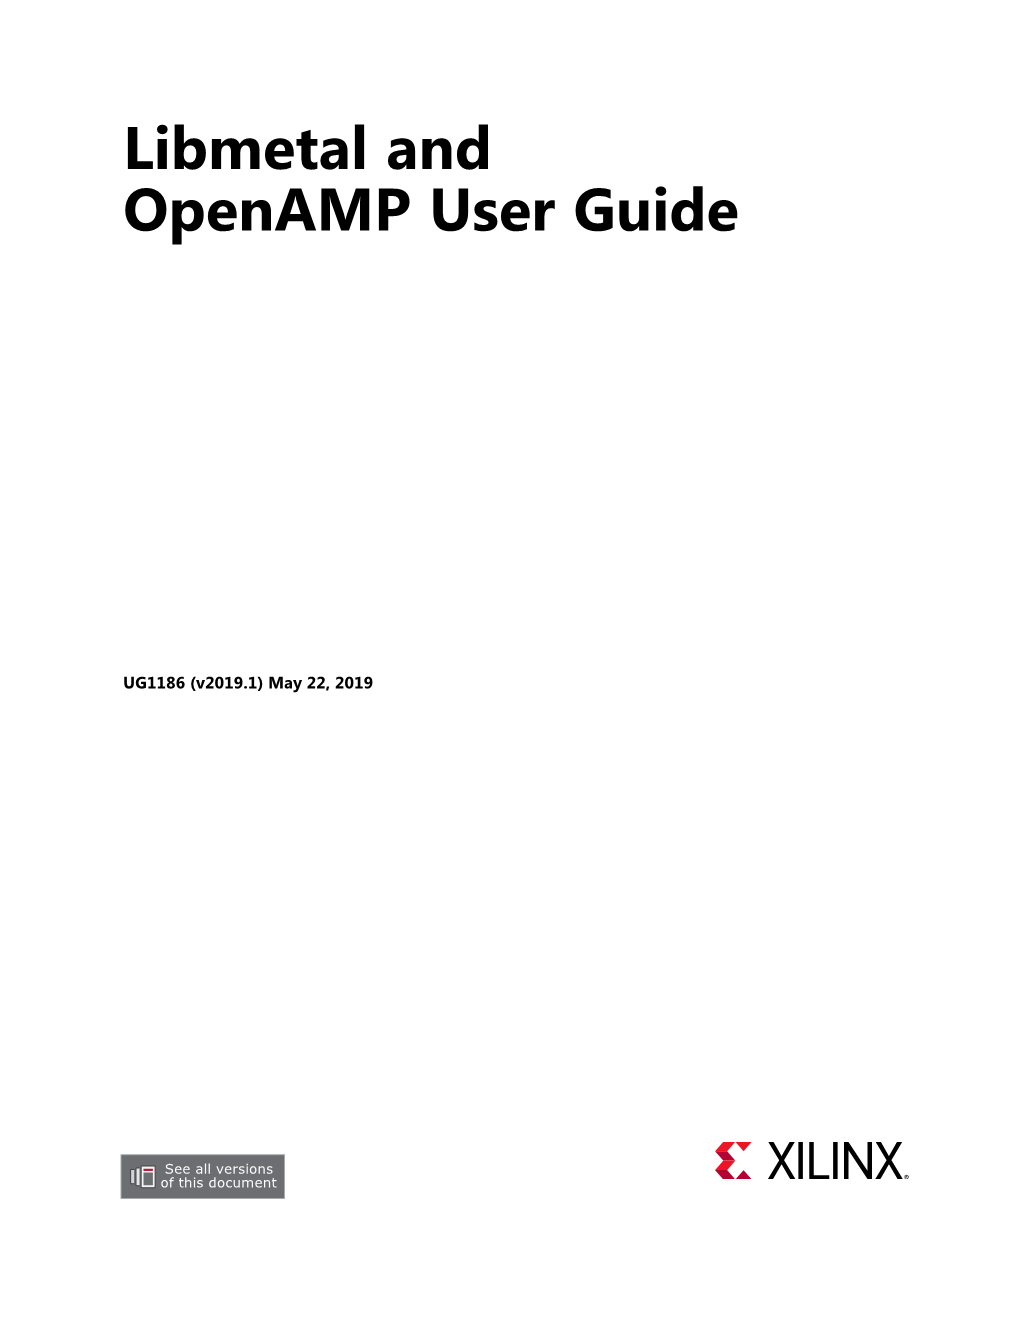 Libmetal and Openamp User Guide (UG1186)